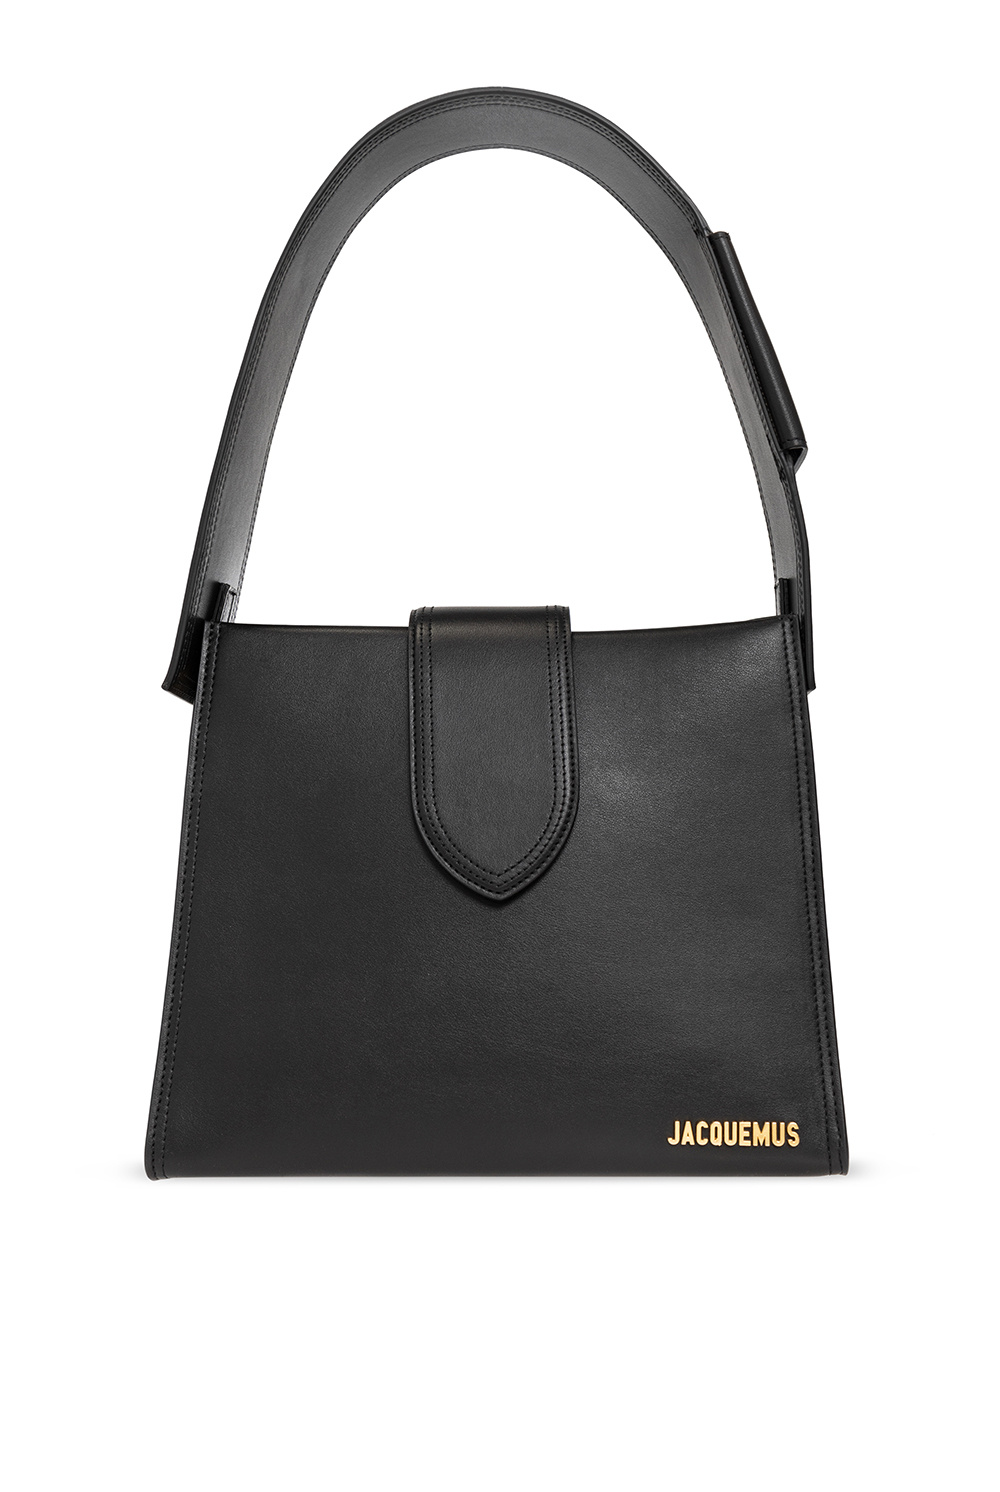 Jacquemus: Black 'Le Bambino' Bag